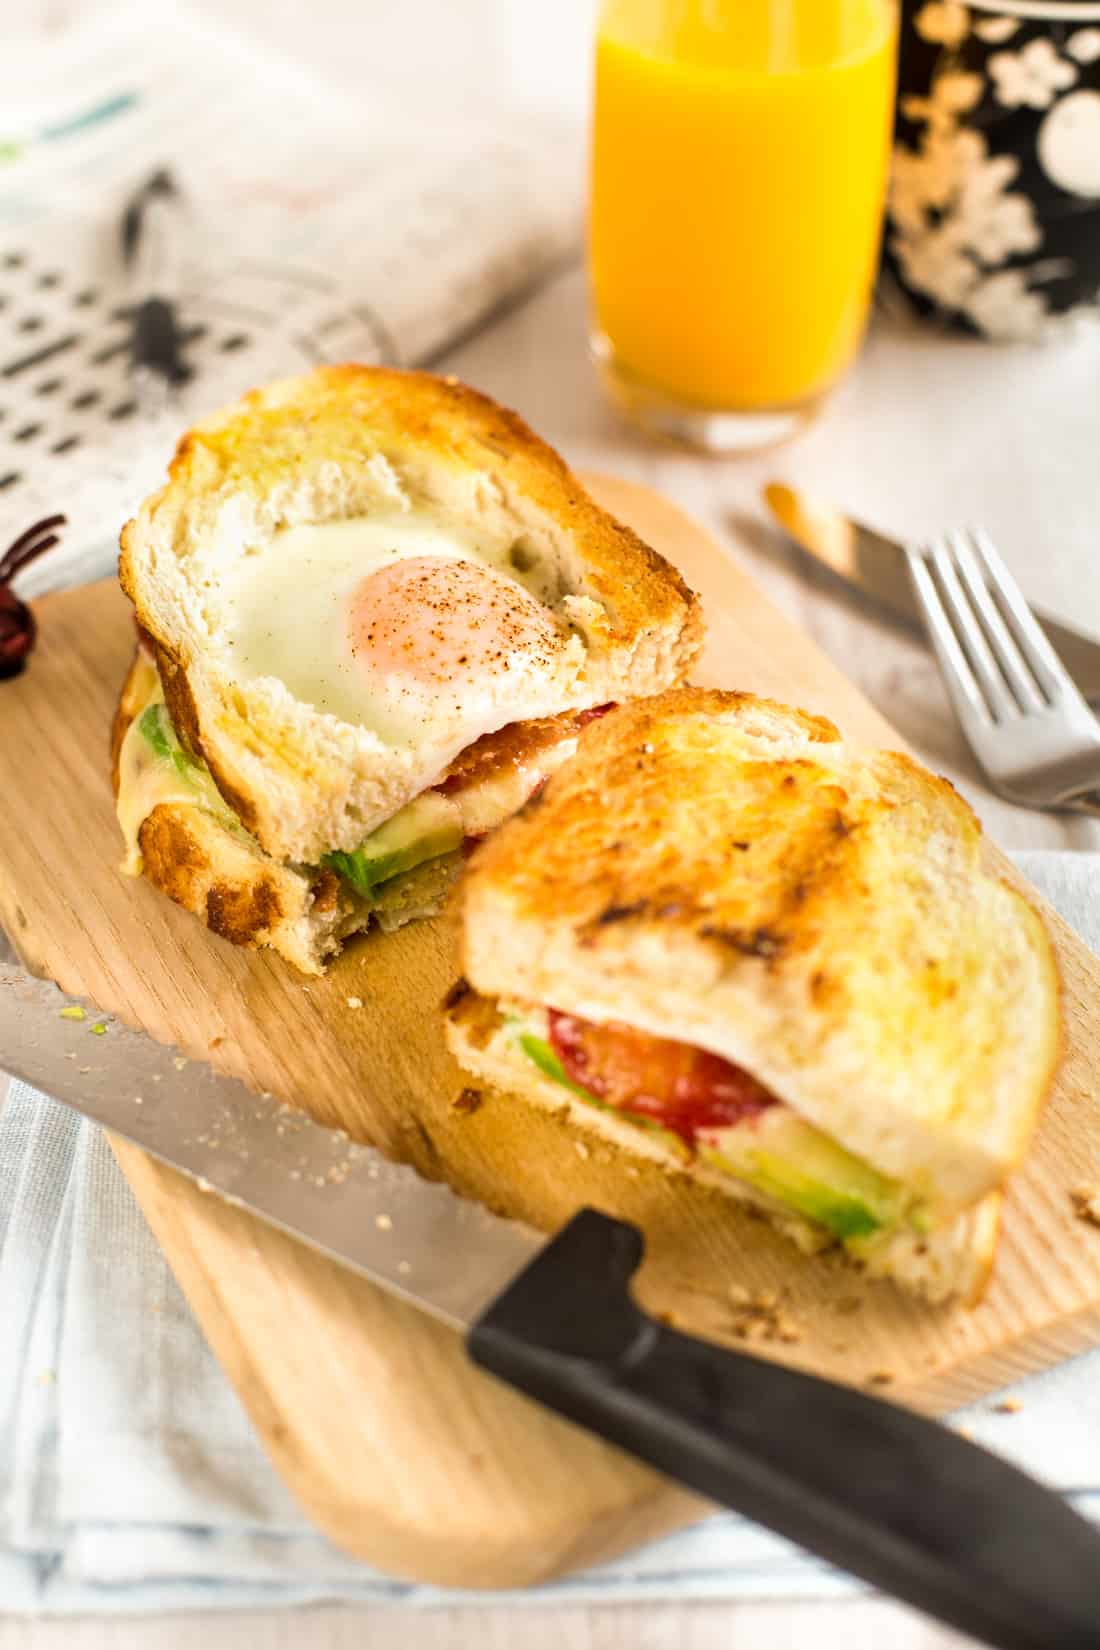 An egg in a hole breakfast sandwich cut in half on a board.